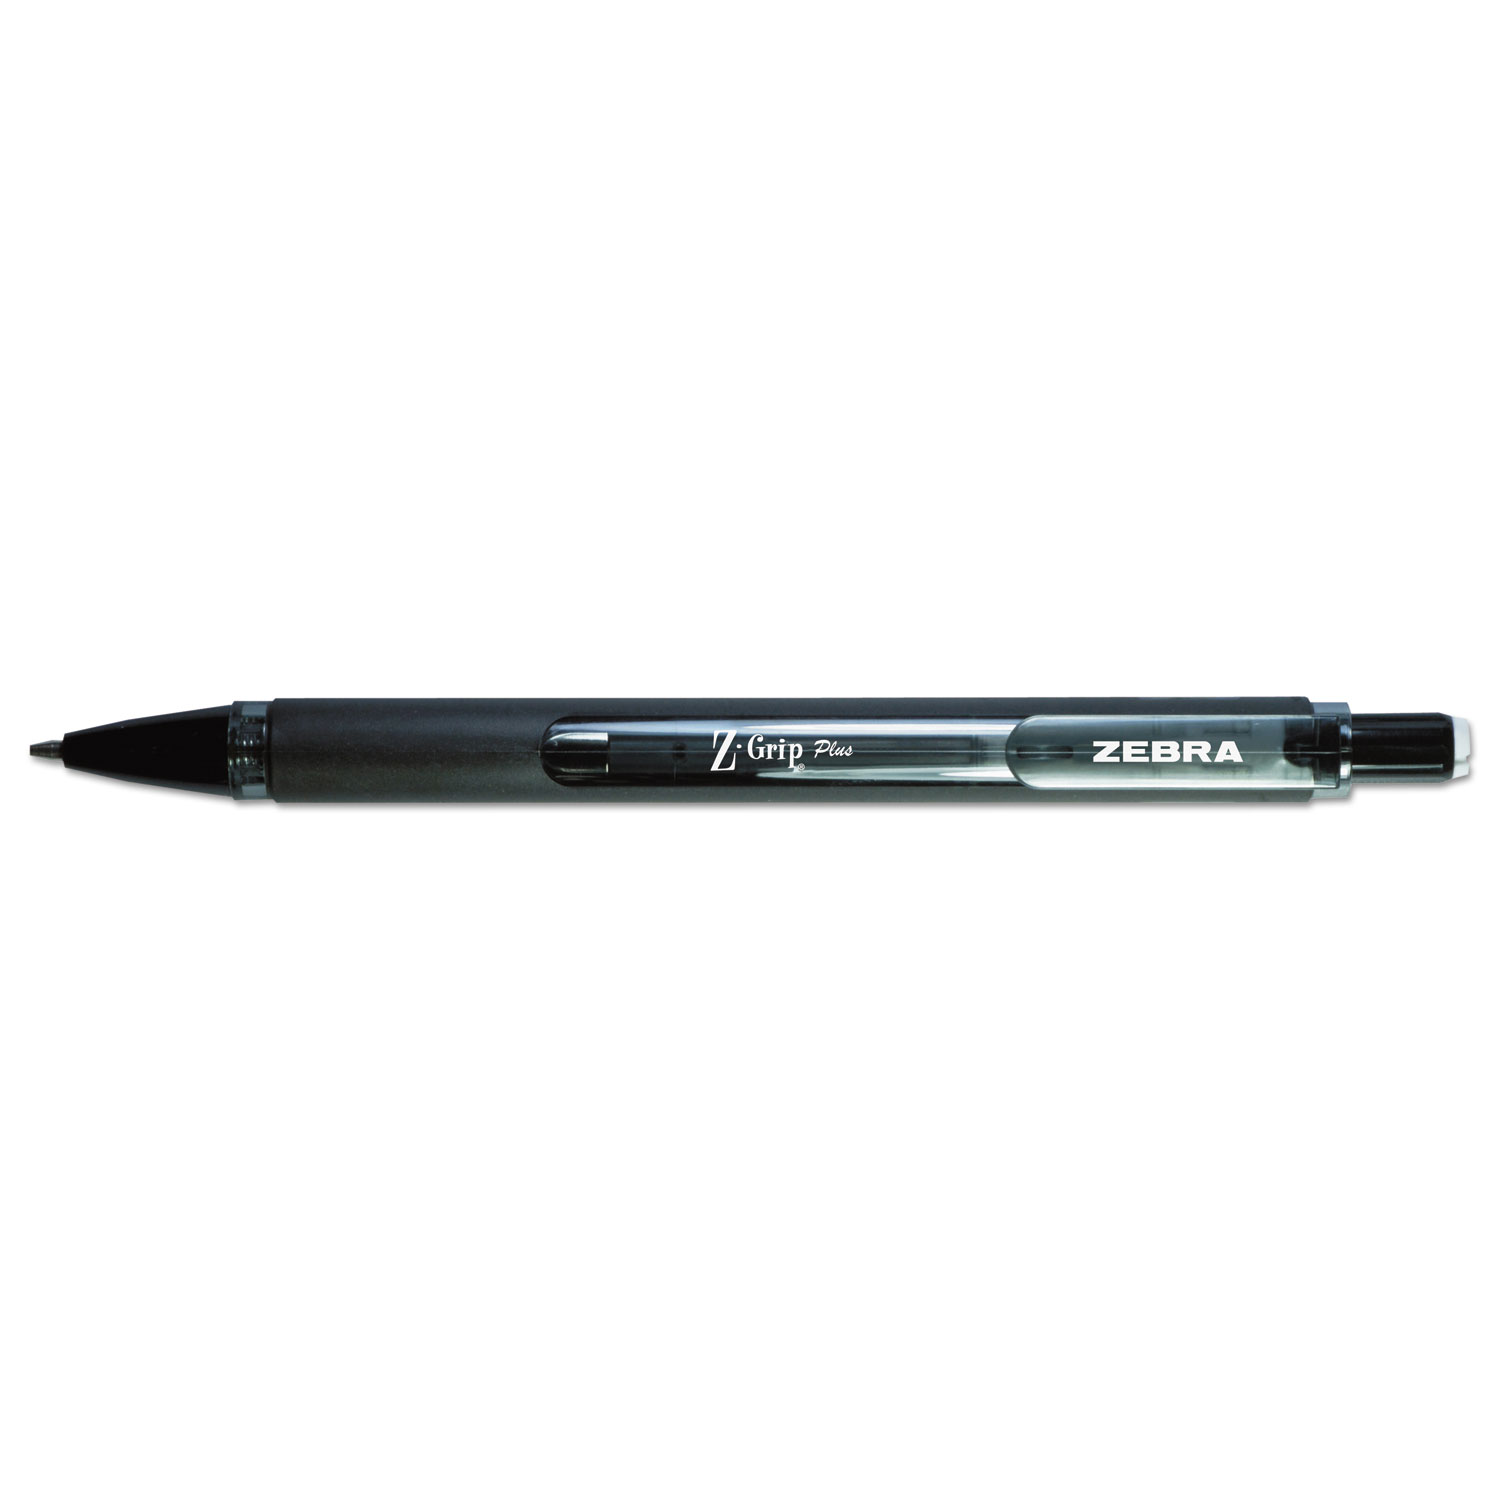  Zebra 55410 Z-Grip Plus Mechanical Pencil, 0.7 mm, HB (#2.5), Black Lead, Assorted Barrel Colors, Dozen (ZEB55410) 